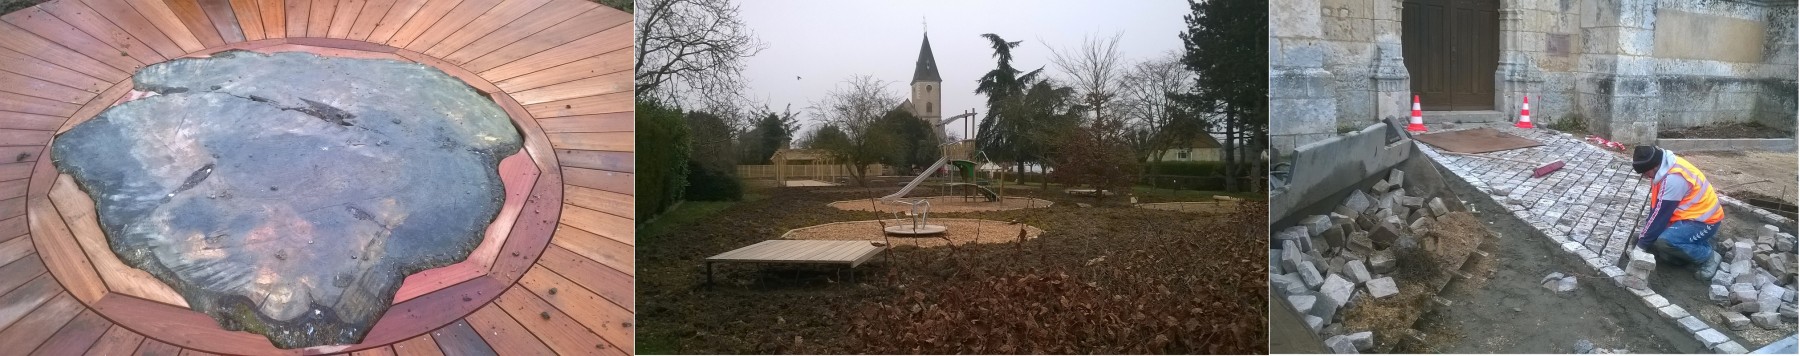 Un nouveau visage du parvis et du jardin de l'église à Saint-Denis-Lanneray